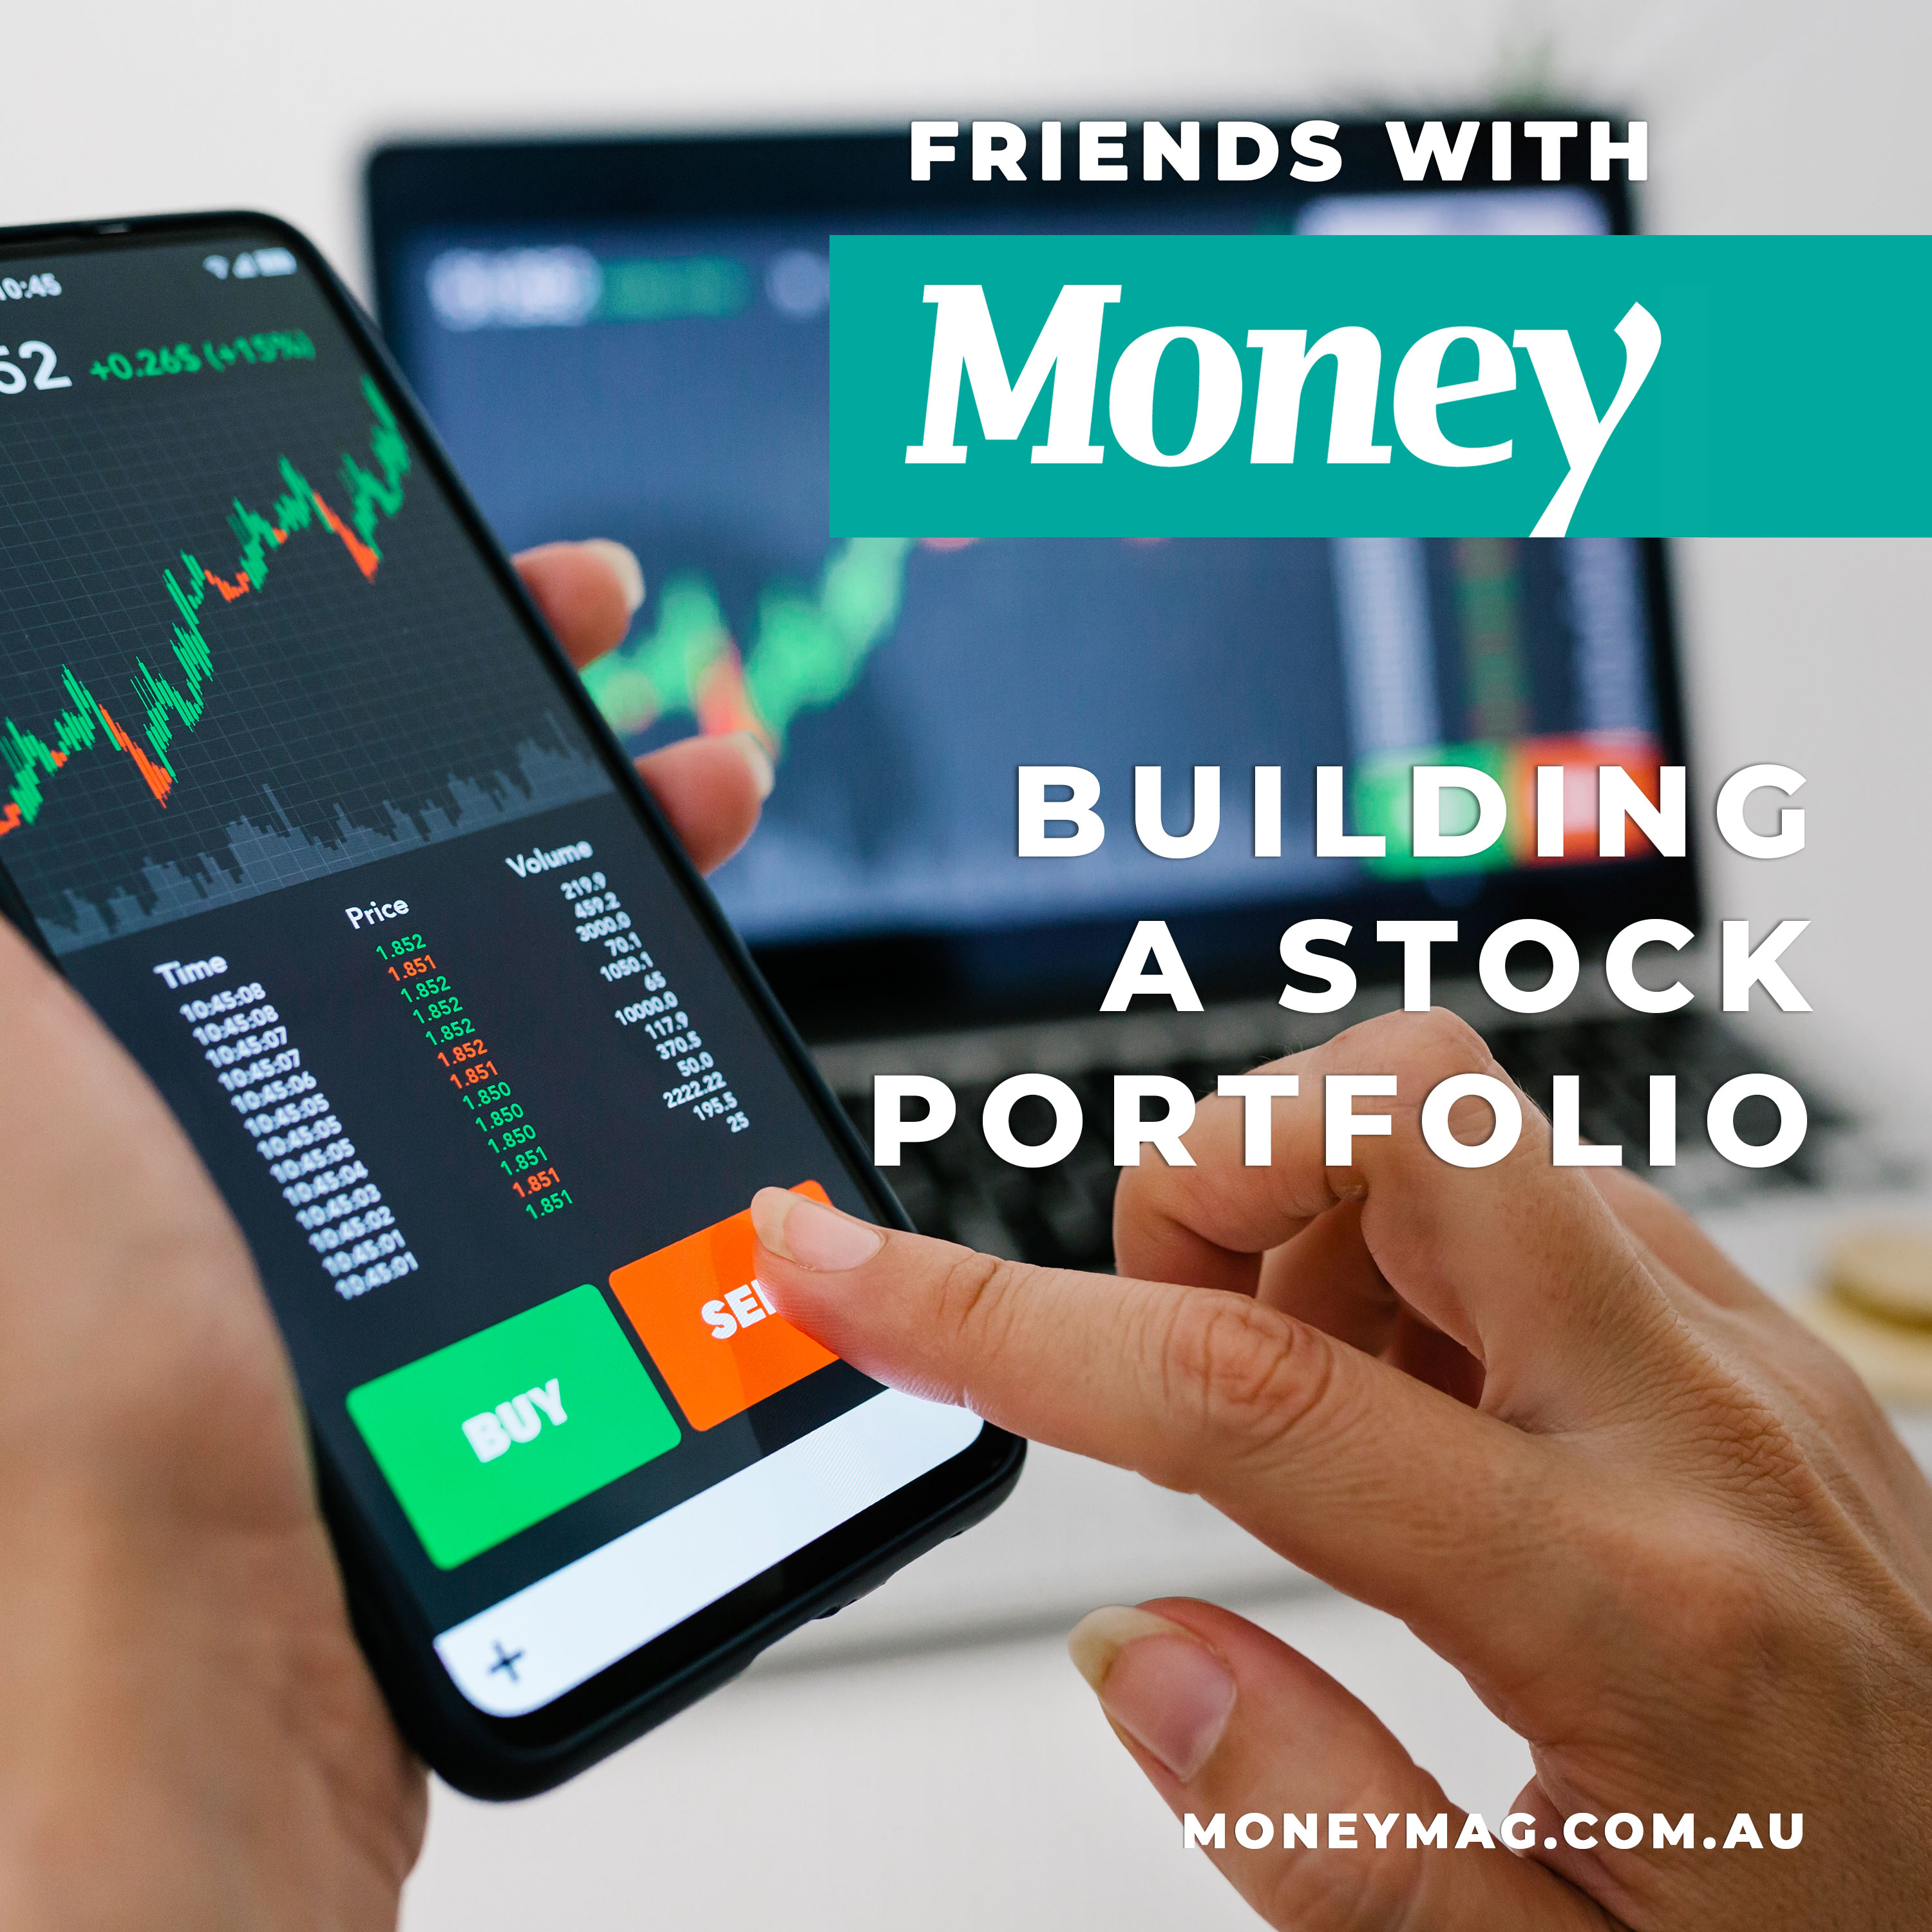 Building a stock portfolio